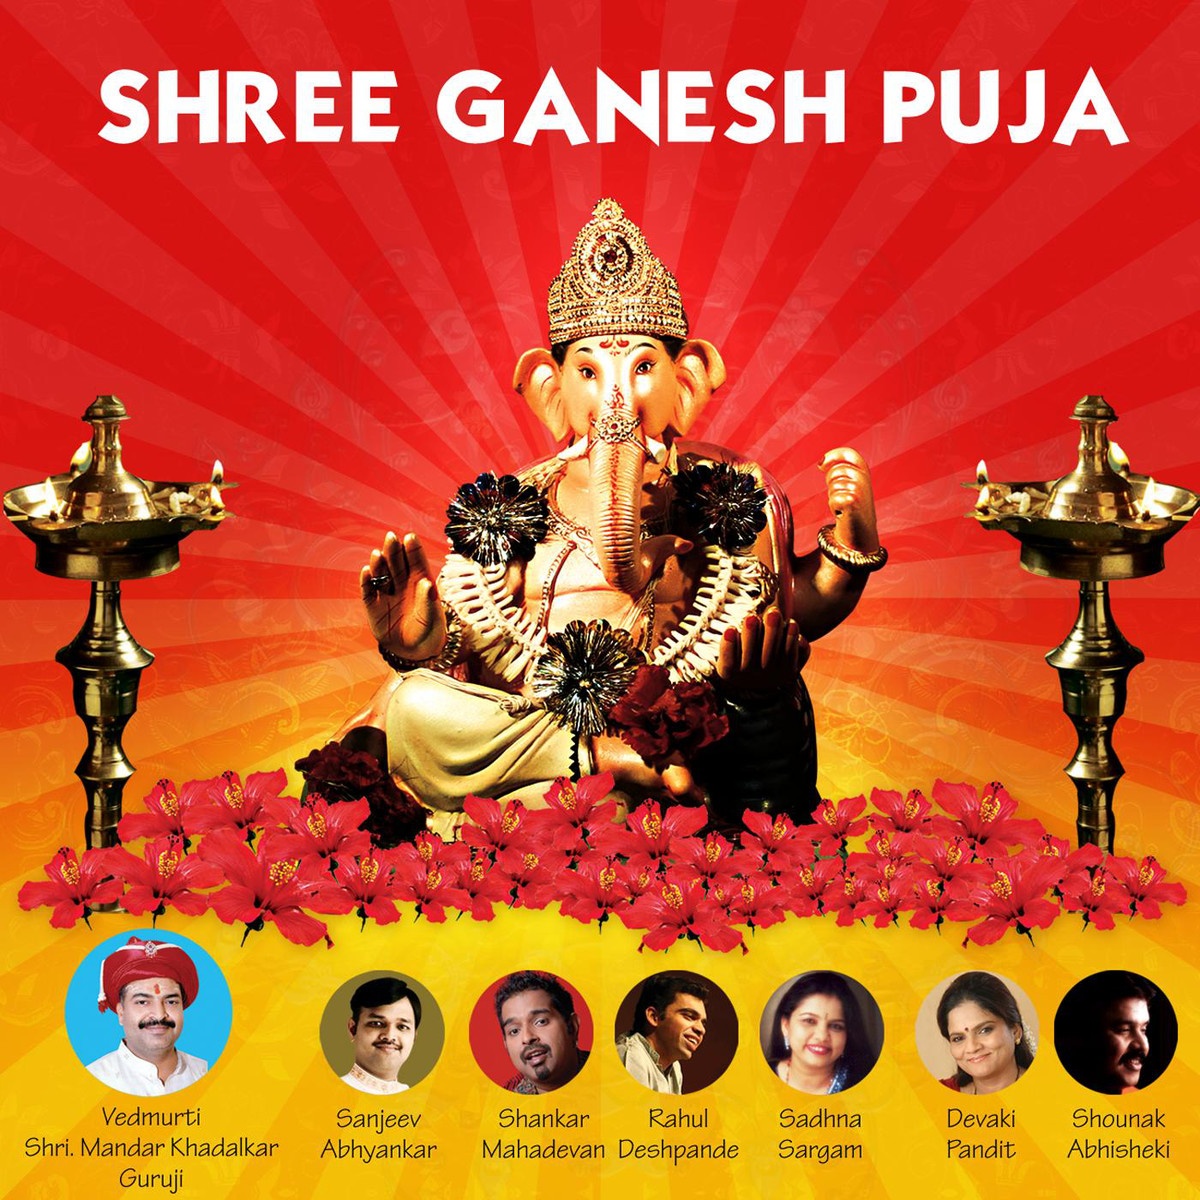 Shree Ganesh Puja